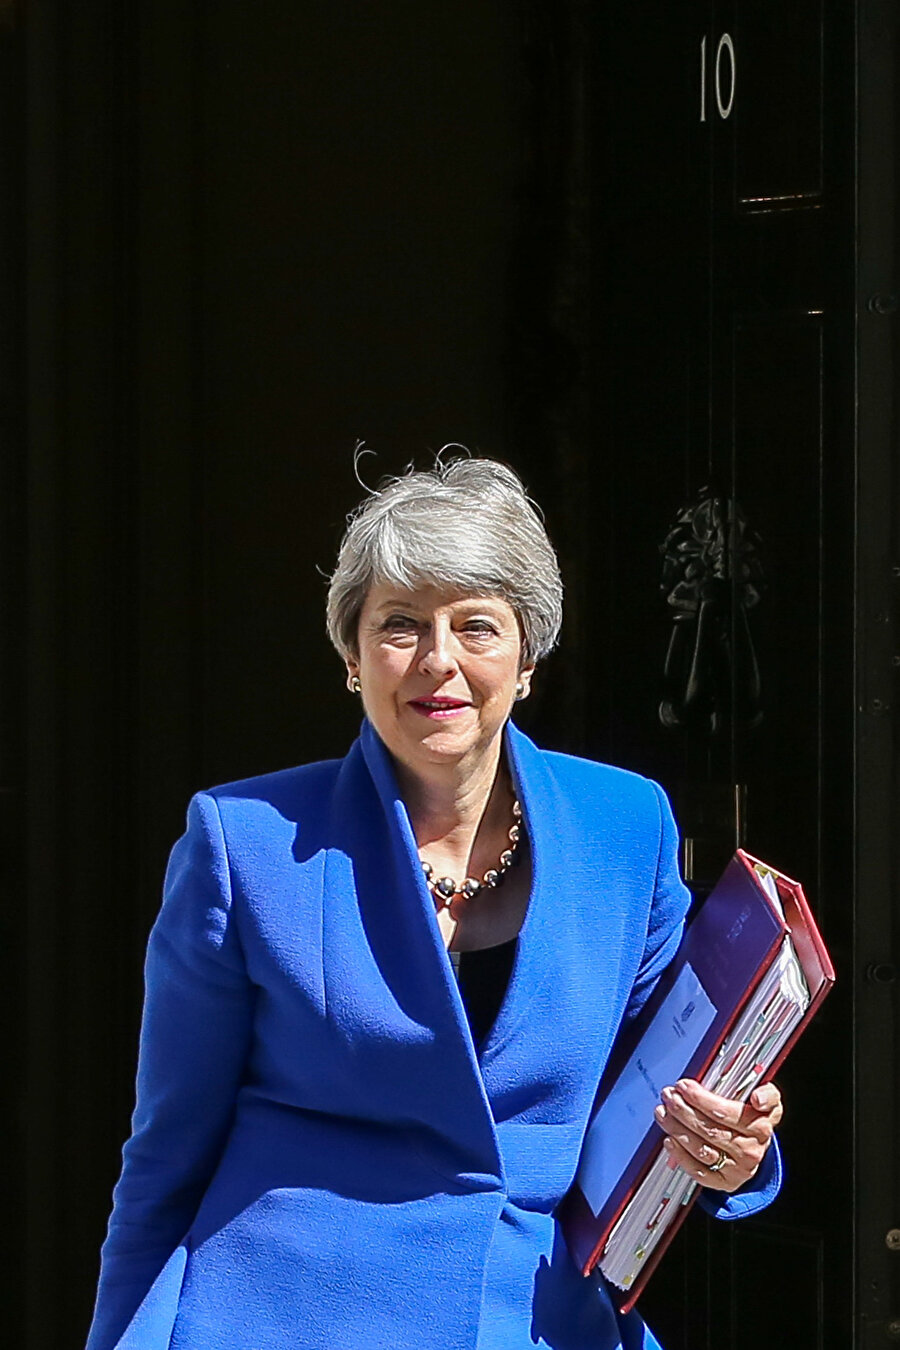 Boris Johnson, Theresa May'in yerine yeni Başbakan olarak görev yapacak. 